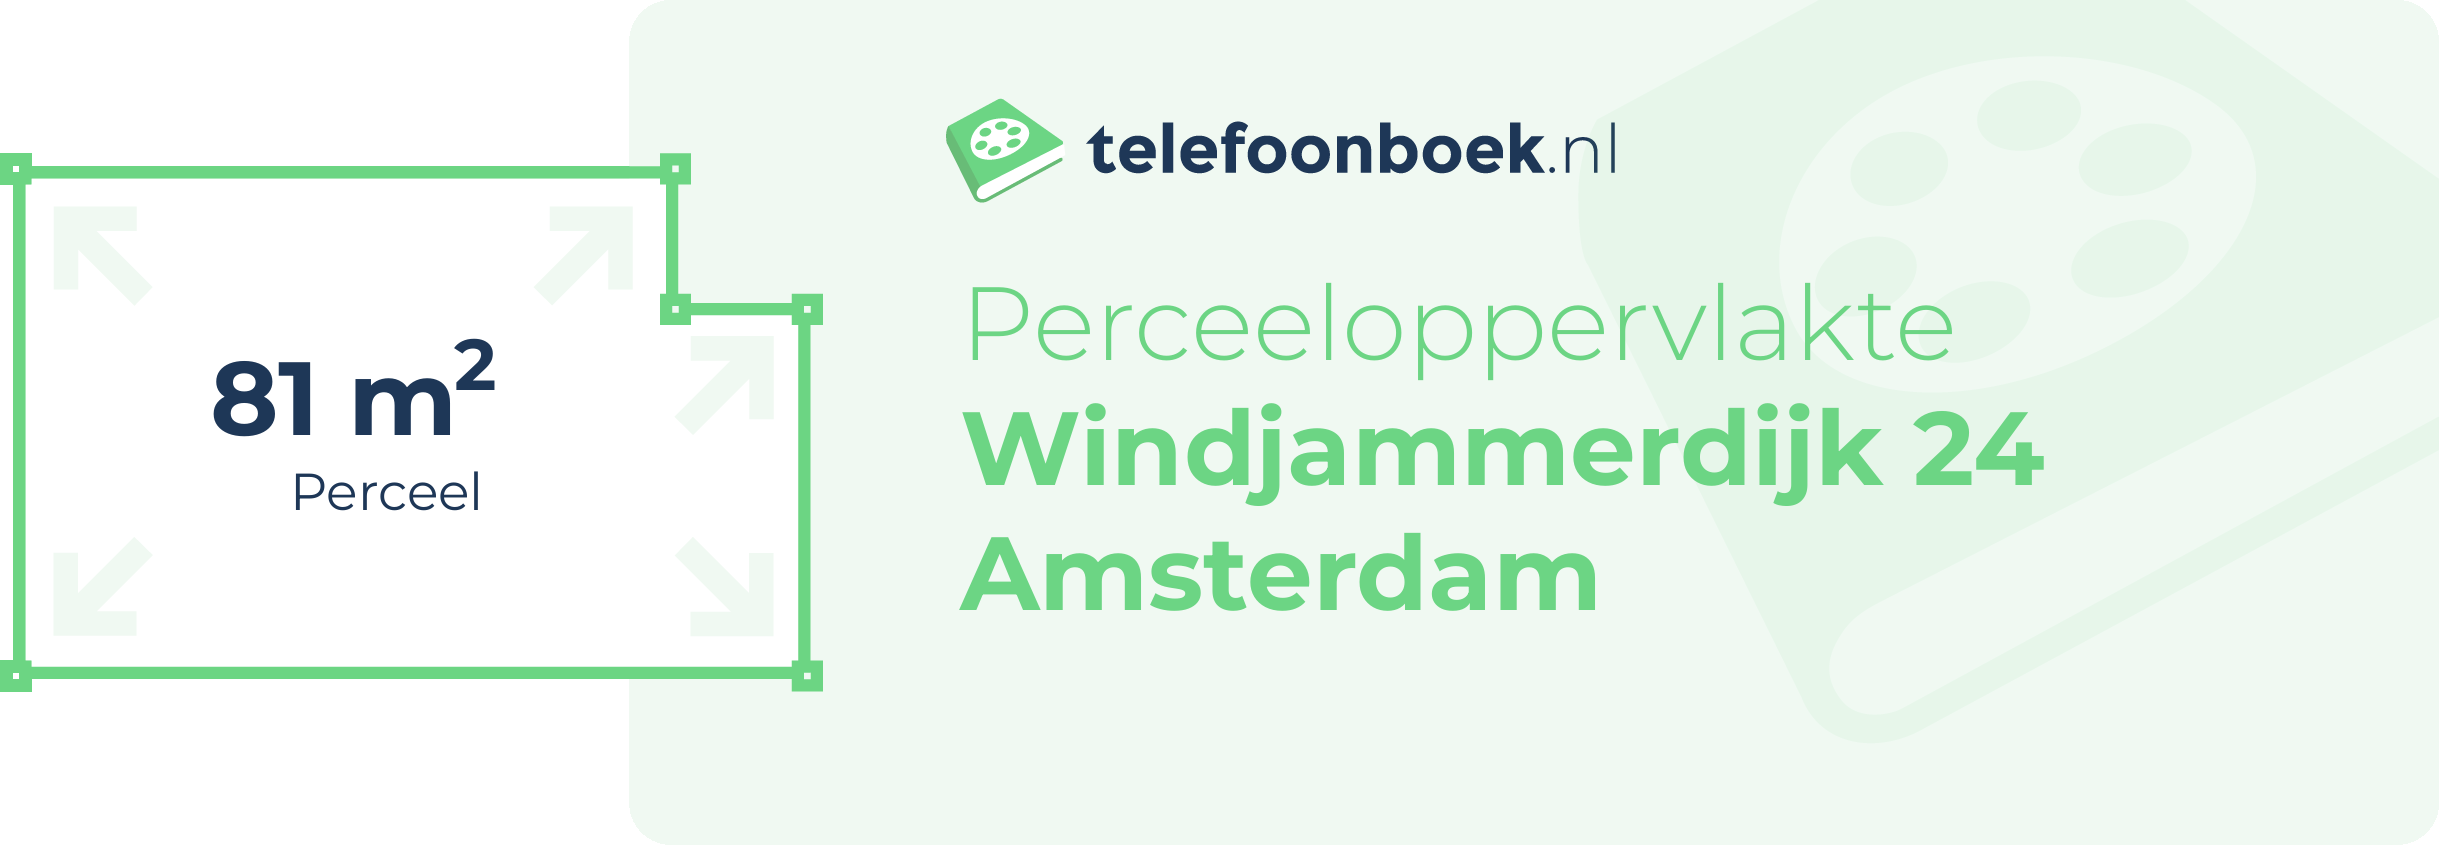 Perceeloppervlakte Windjammerdijk 24 Amsterdam